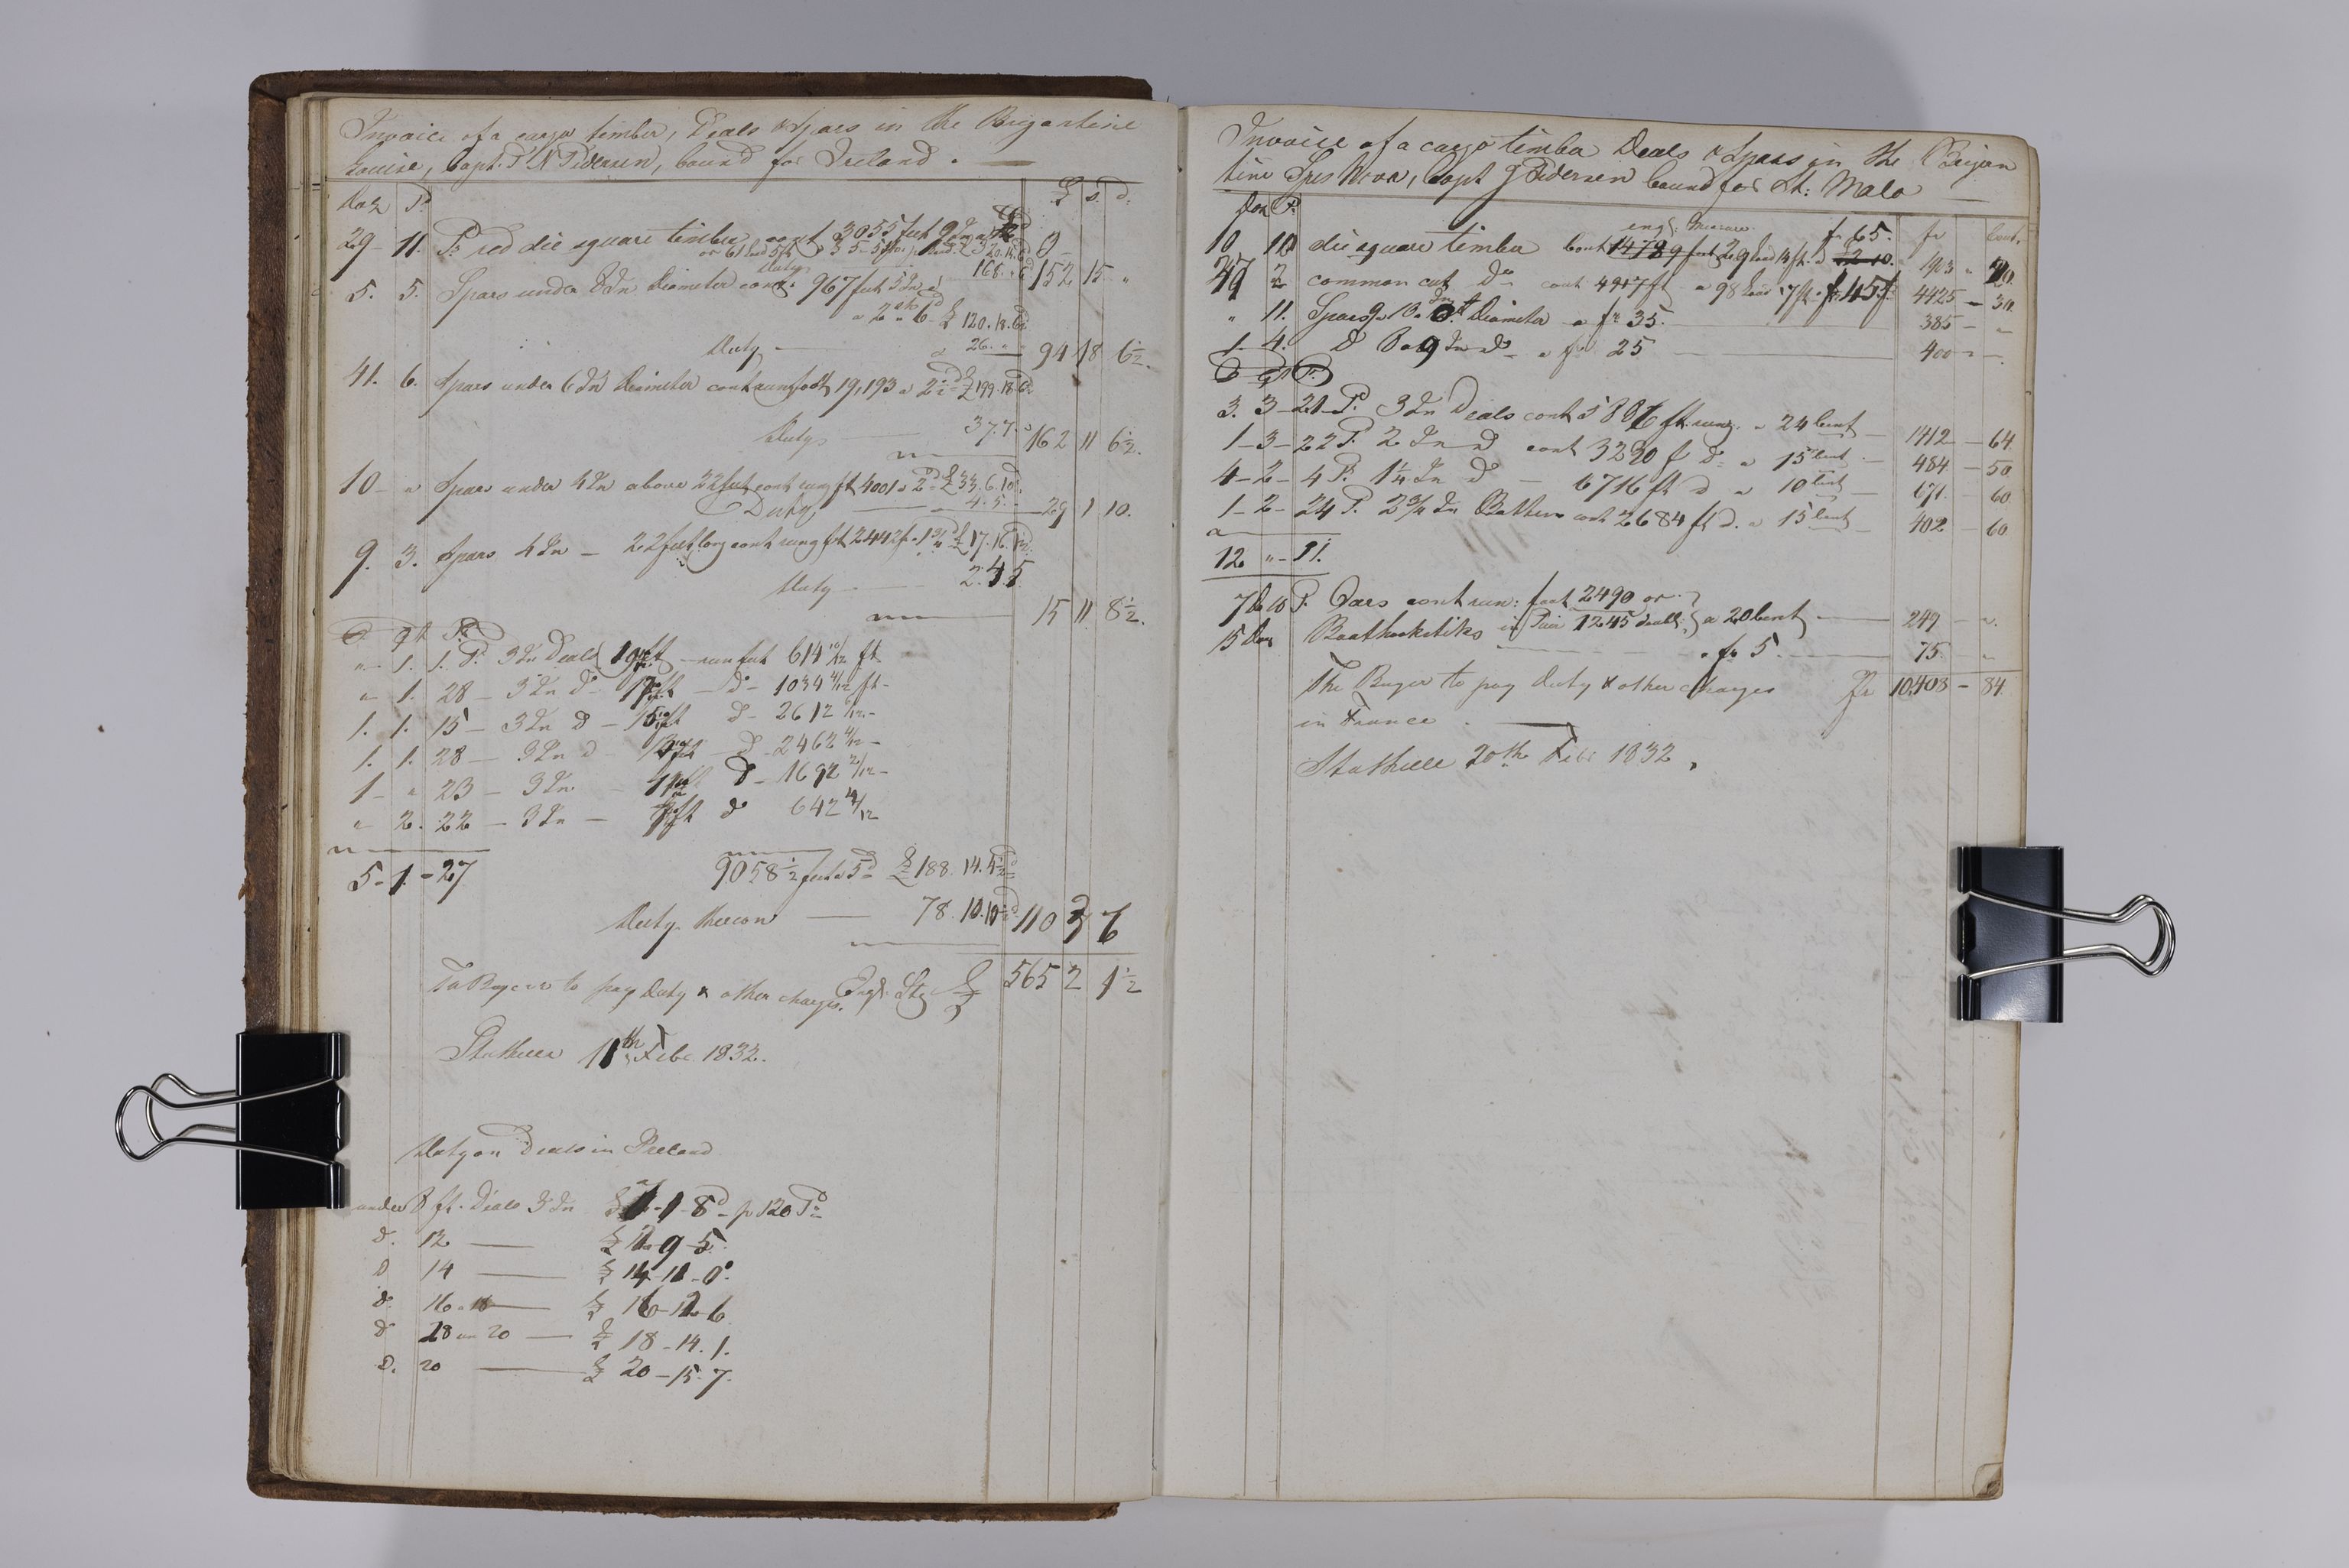 , Priscourant-tømmerpriser, 1834-38, 1834-1838, s. 30